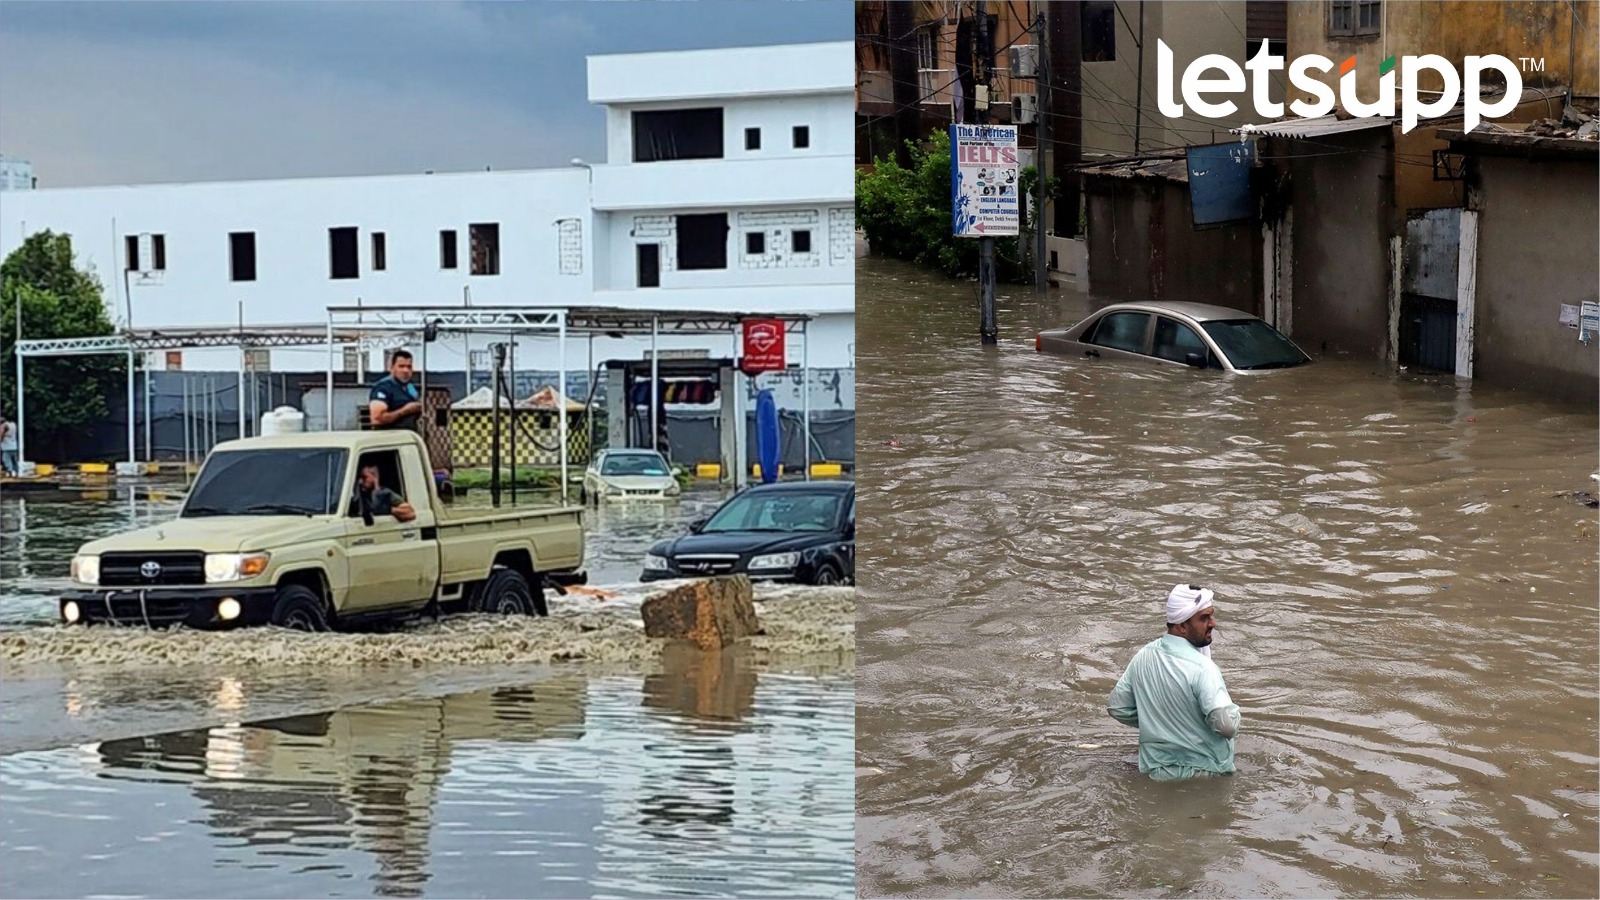 Libya Flood : धक्कादायक! पुरातील मृत्यूंची संख्या 6 हजारांवर